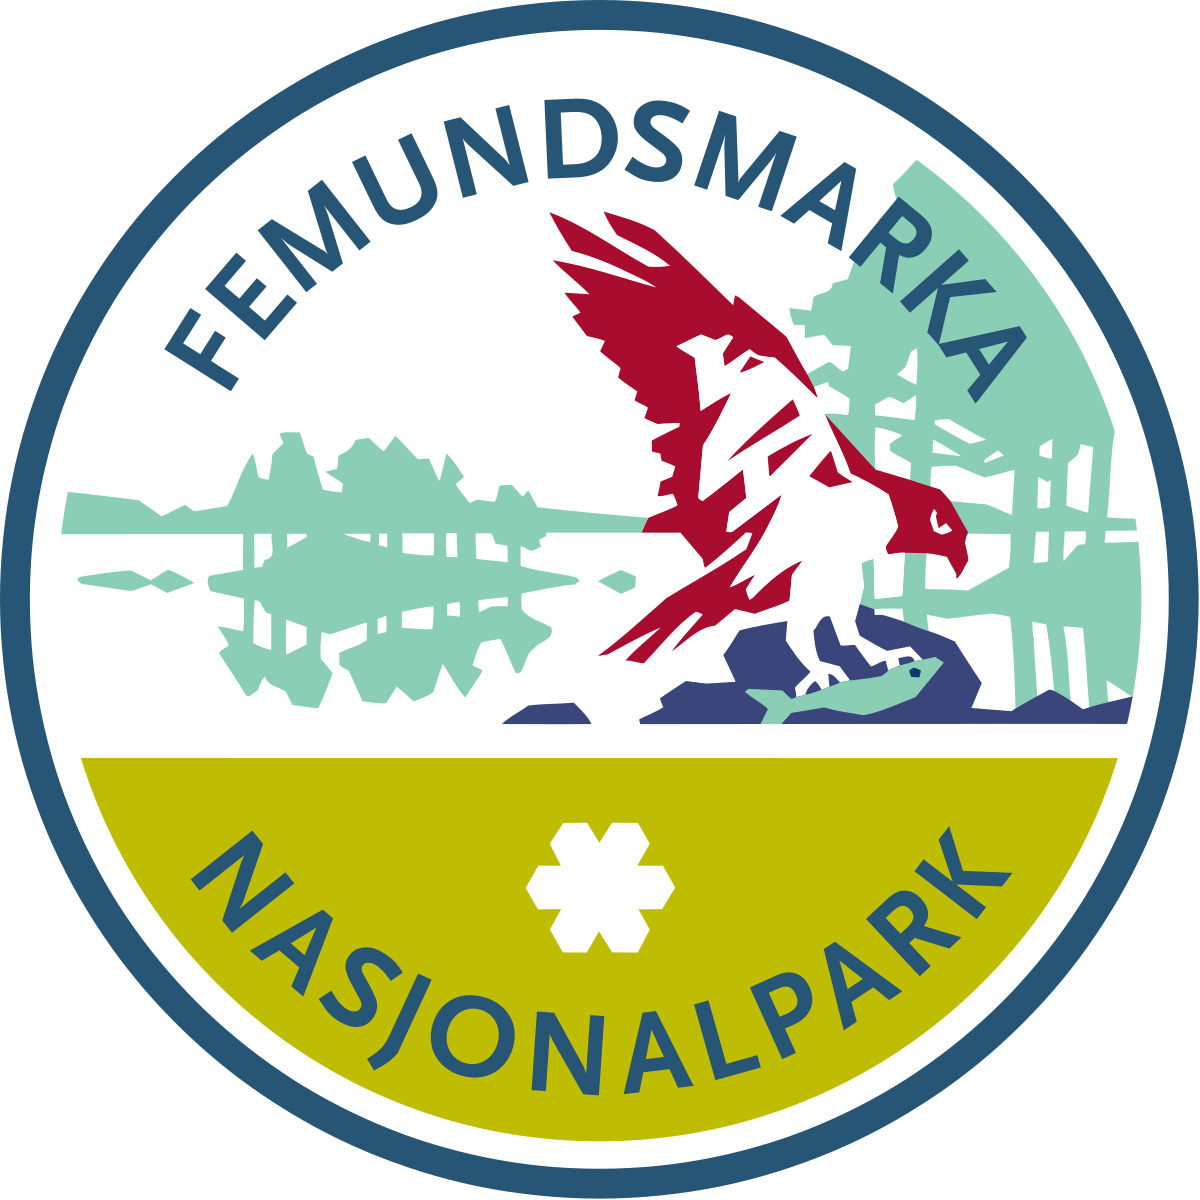 Femundsmarka Nasjonalpark png icons